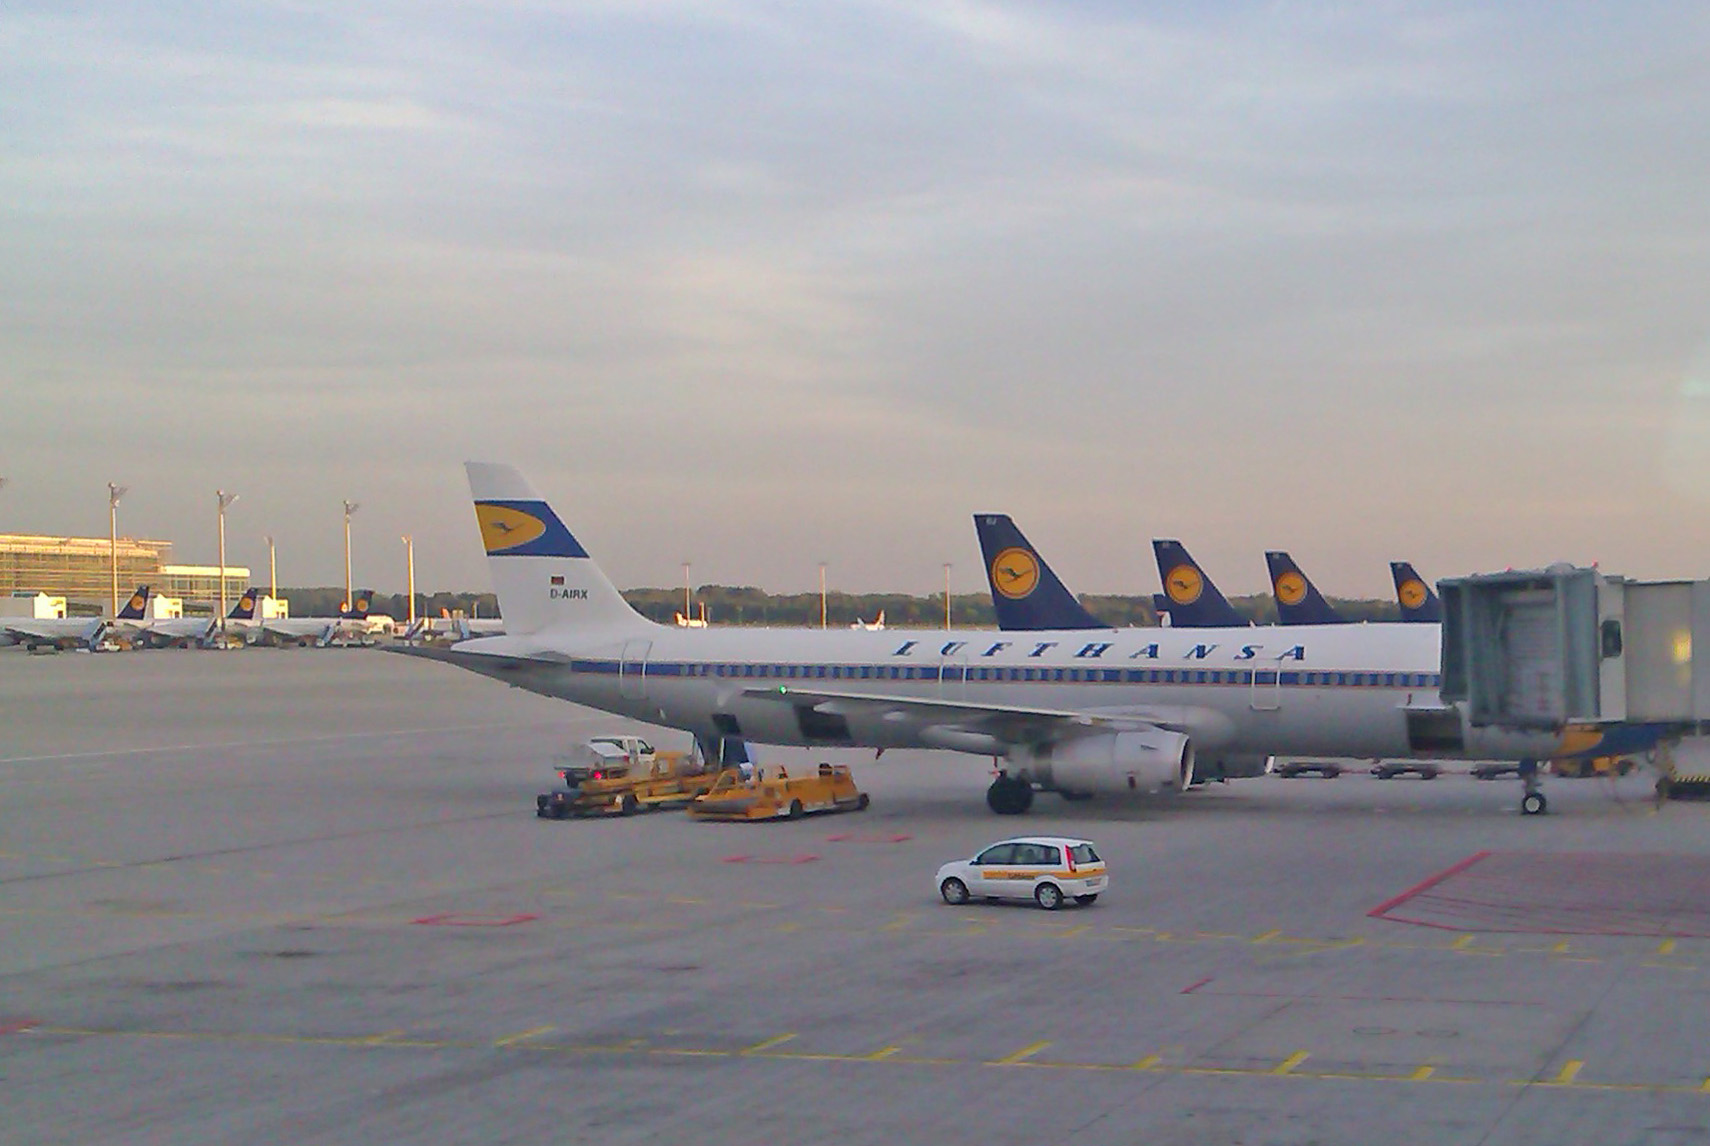 Lufthänsel Flugzeuge in München